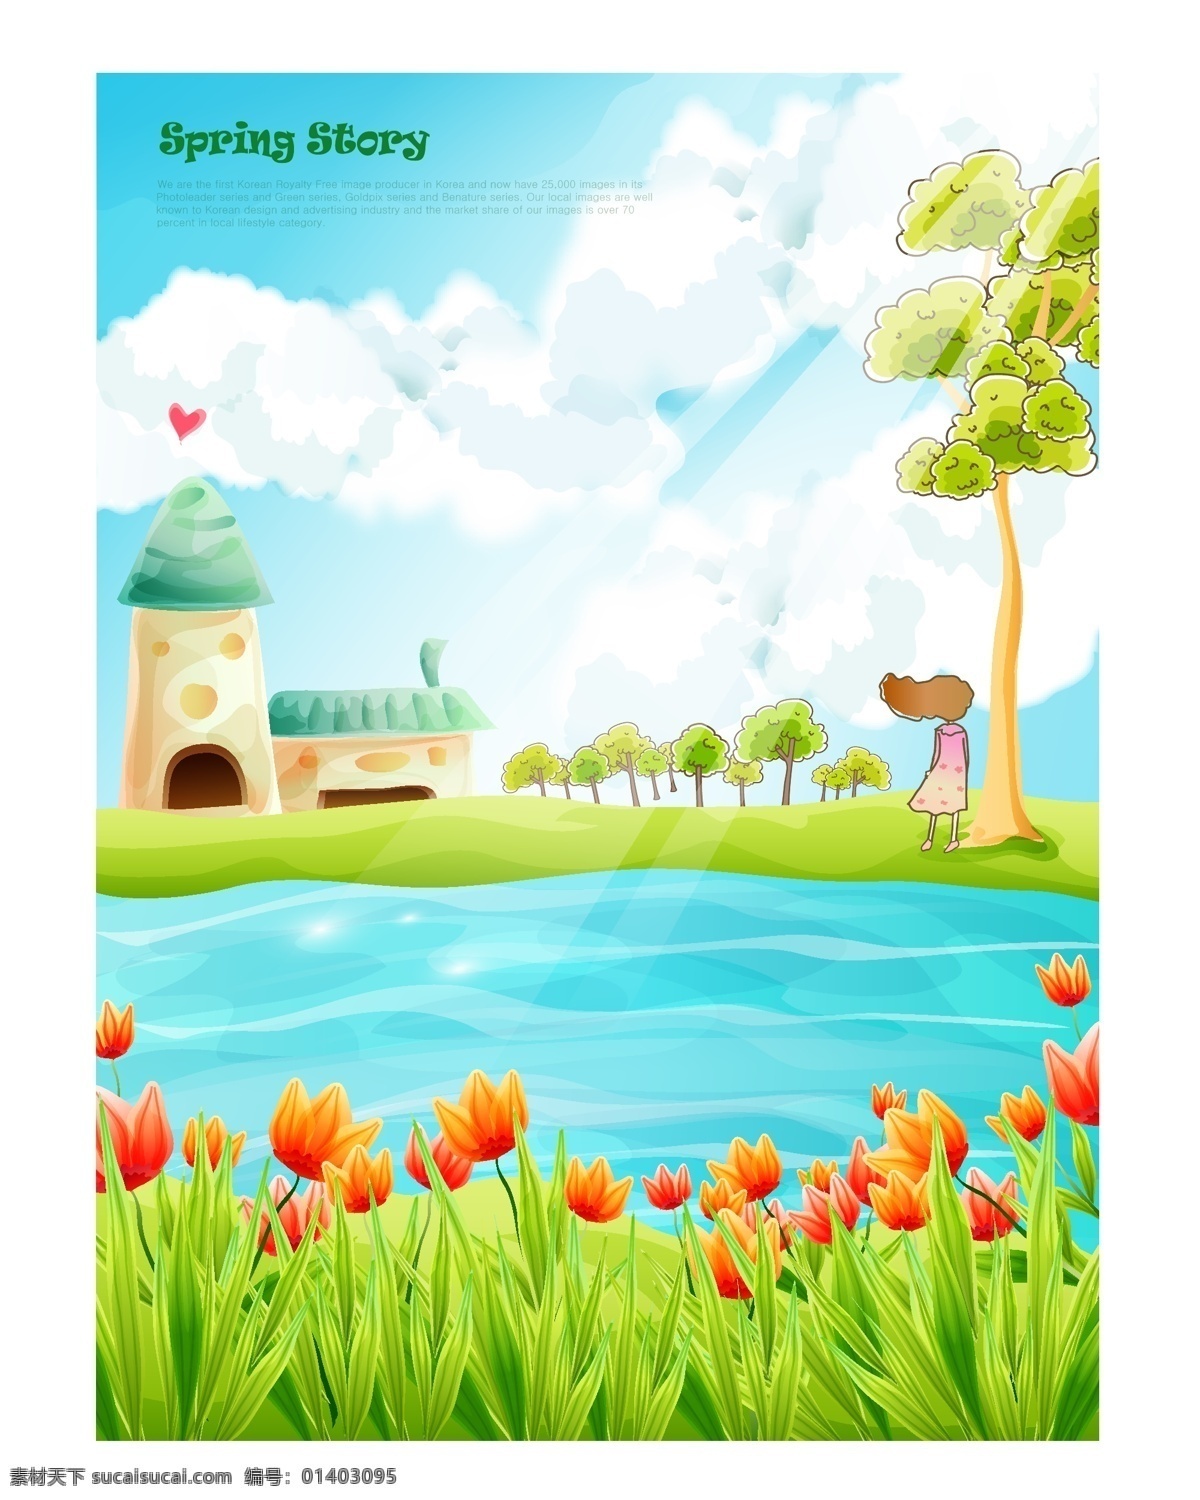 韩式 可爱 卡通 春天 矢量 海报 插画 城堡 房子 风景 花 花草 花朵 花卉 植物 绿叶 小屋子 蓝天白云 天空 小女孩 心 水 其他海报设计